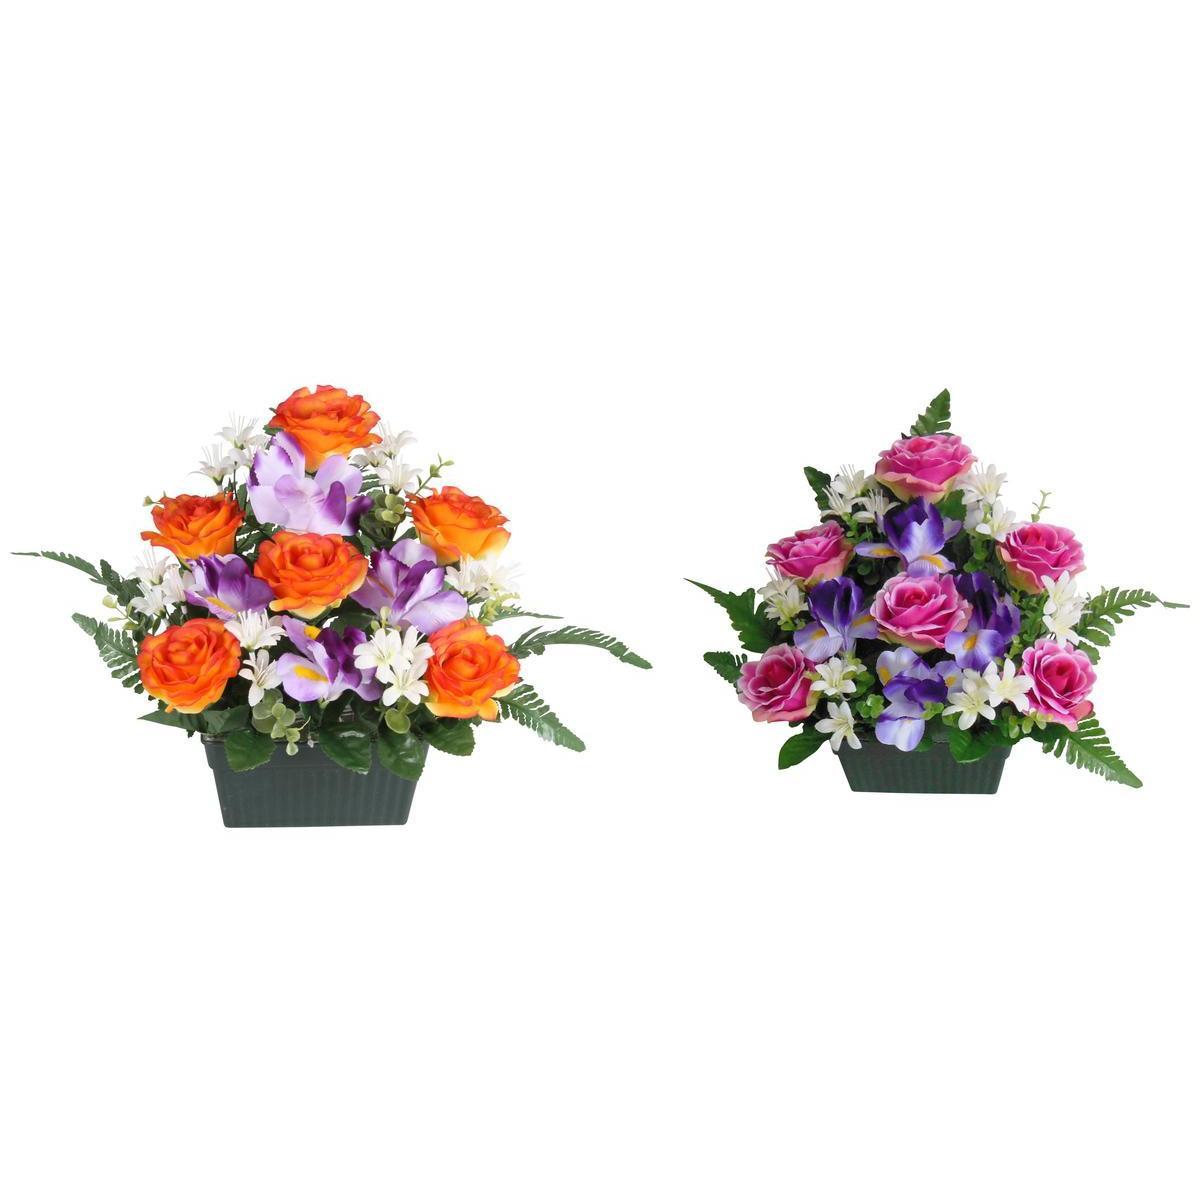 Jardinière de 6 roses et 4 iris - Plastique et polyester - 16 x 10 x H 32 cm - Différents coloris